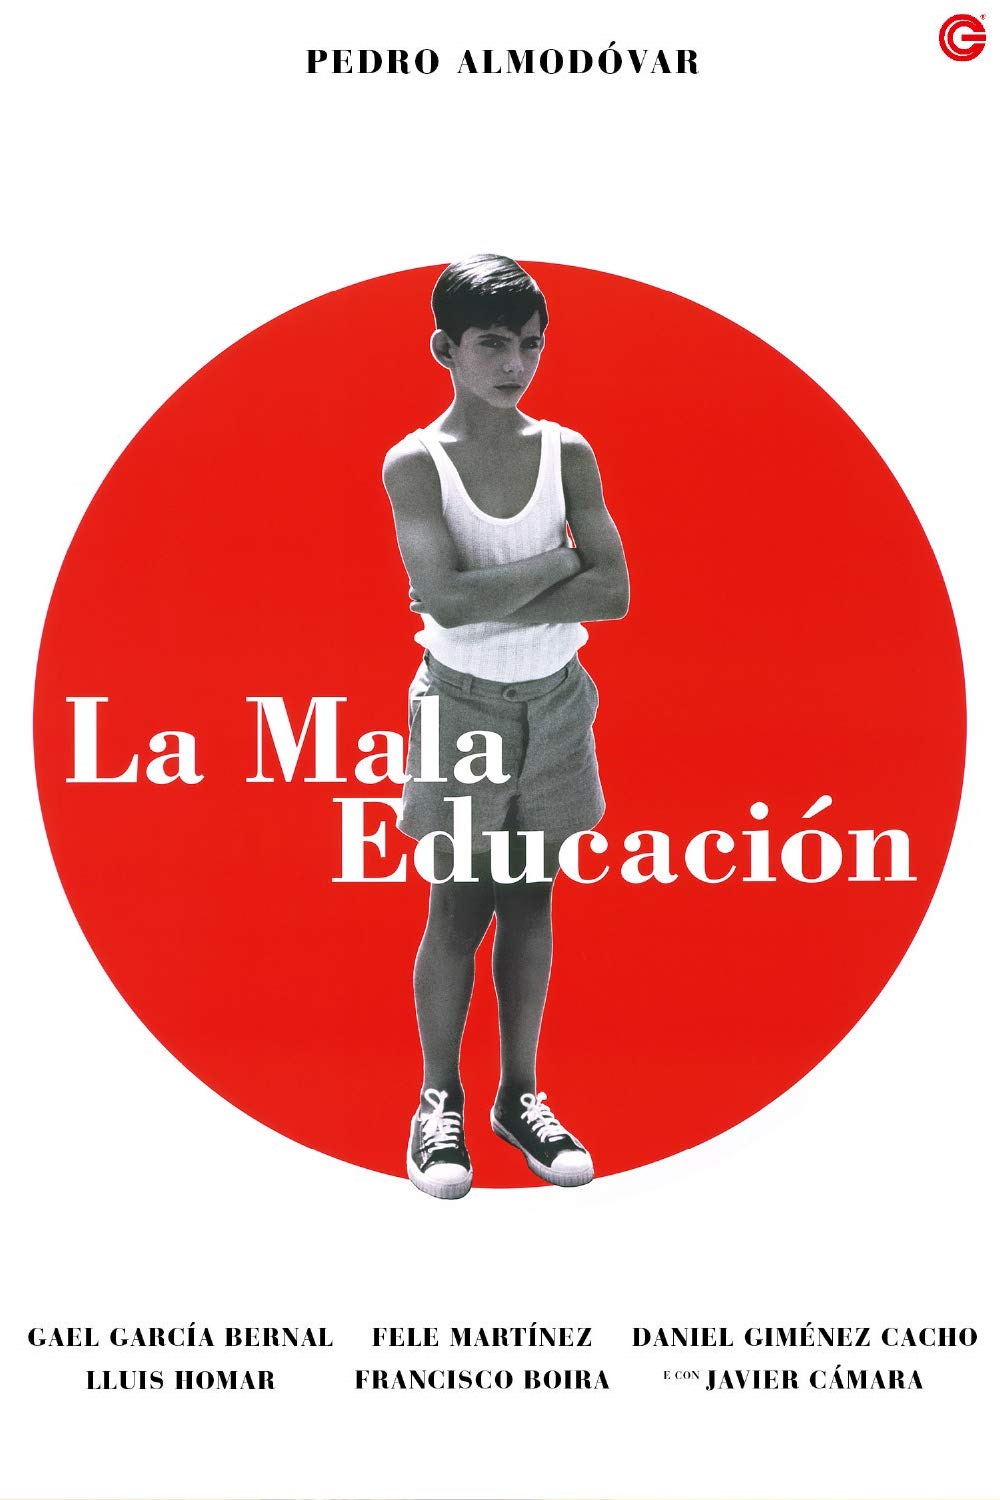 La mala educacion (2004)